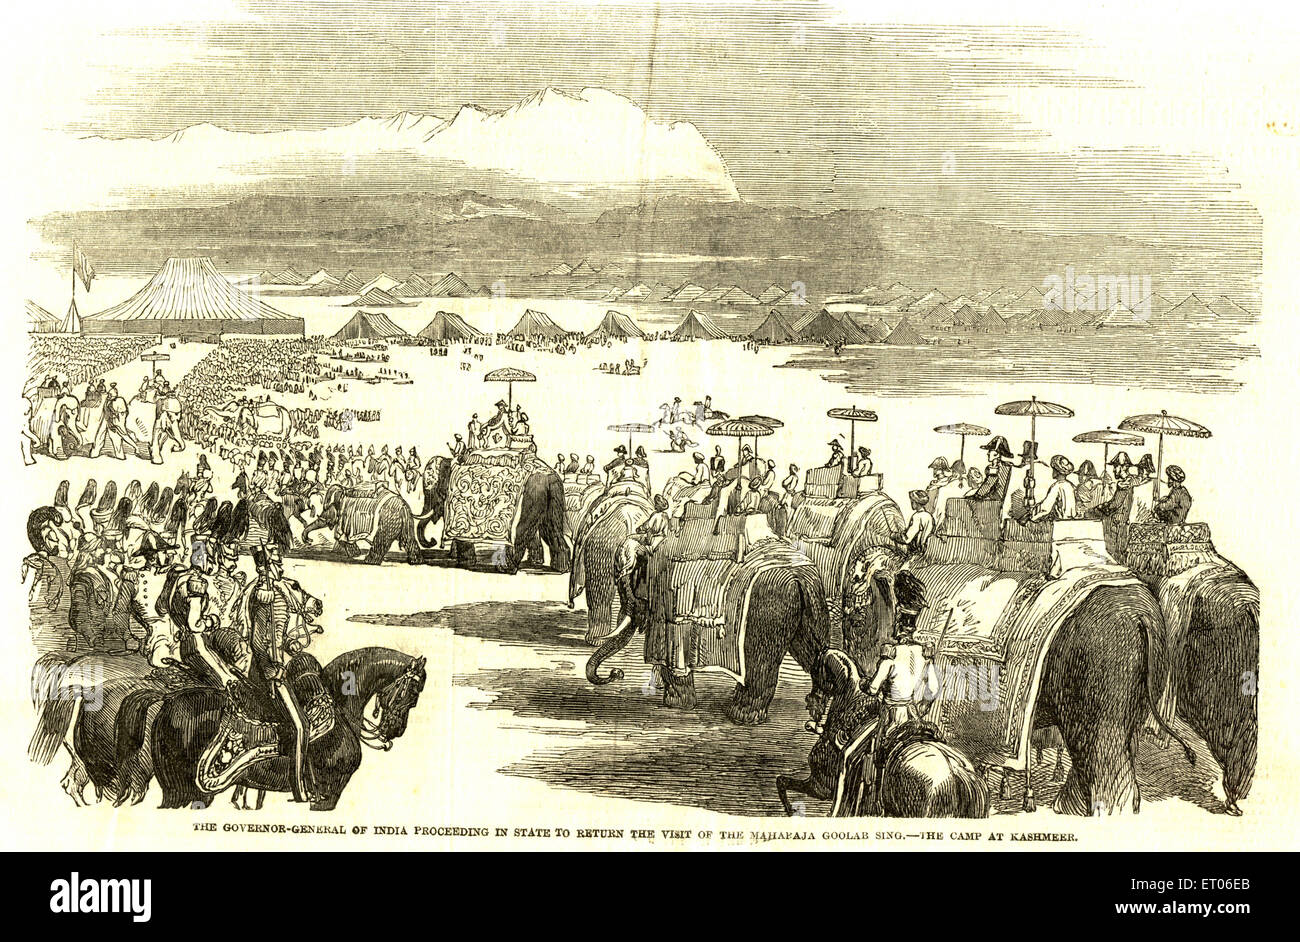 Generalgouverneur von Indien Verfahren im Zustand, um den Maharaja Goolab Singh zu besuchen; das Lager in Jammu & Kashmir, Indien, alter Jahrgang 1800s Stockfoto